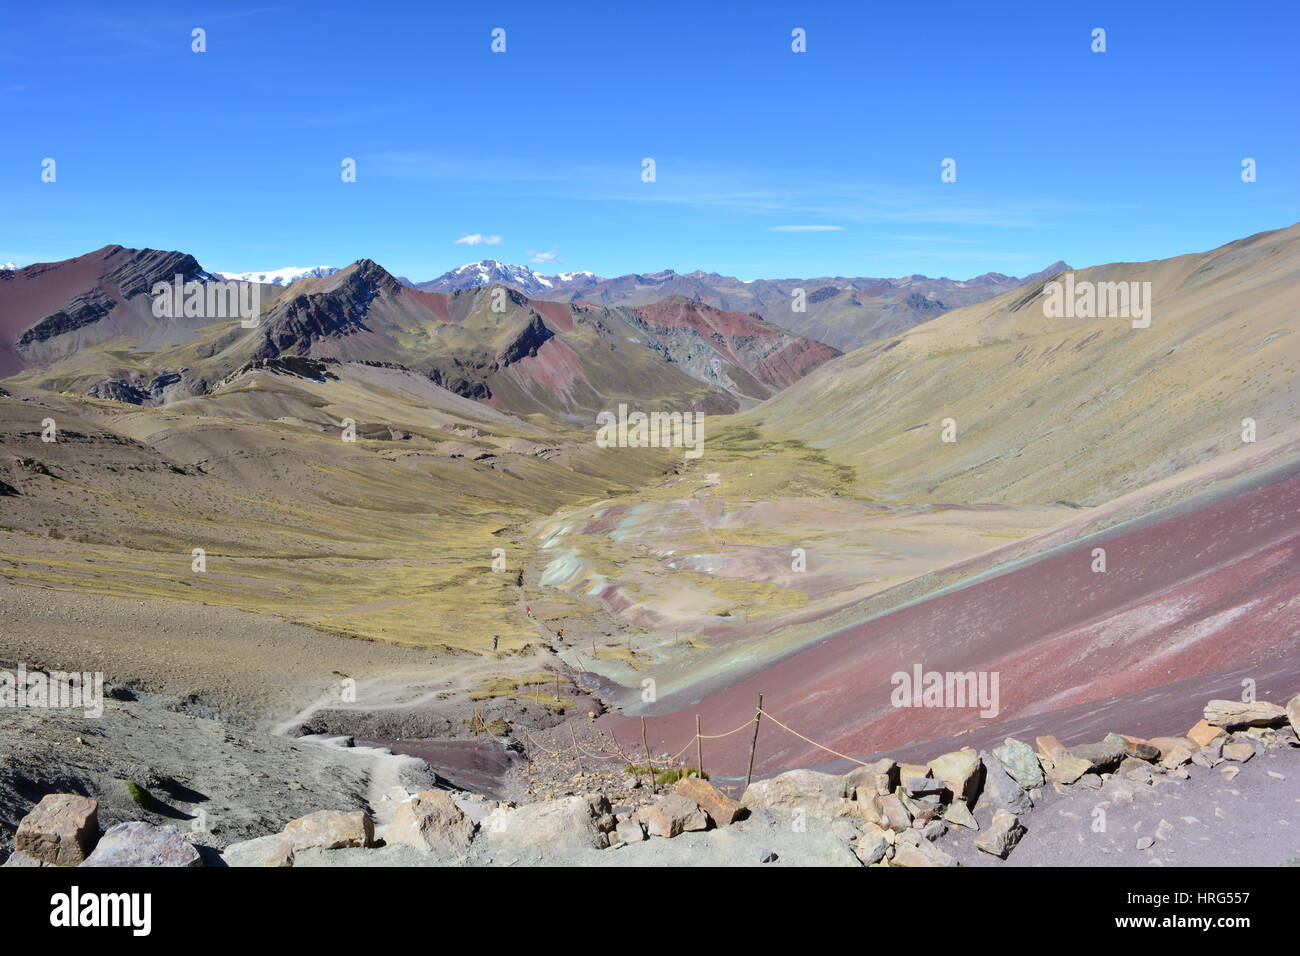 Wunderschöne Landschaft des Cerro Colorado - aka Rainbow Mountain, Vinicunca oder Ausangate - in der Region von Cusco, Peru Stockfoto